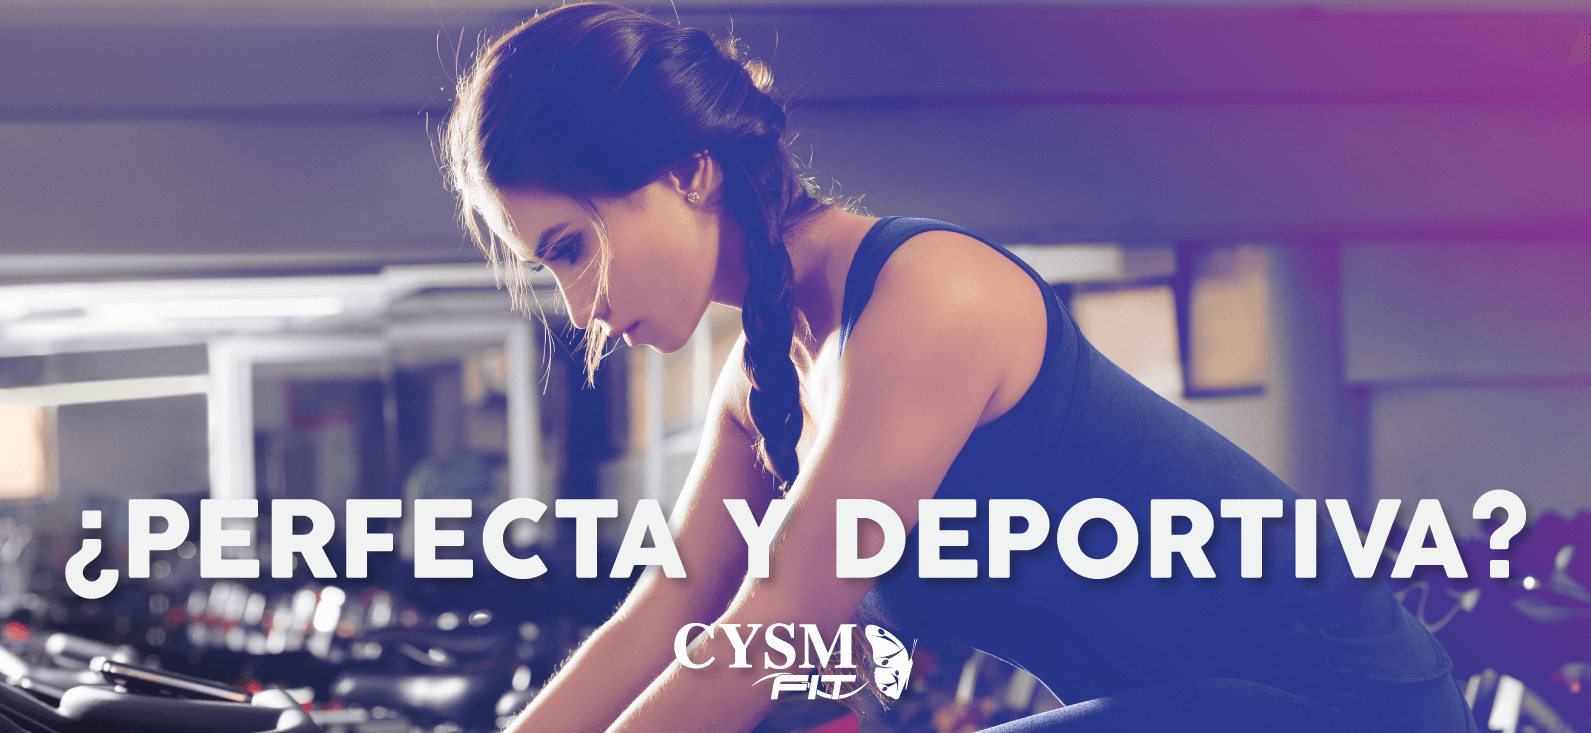 ¿Bella y en forma mientras haces ejercicio? by CYSM tips